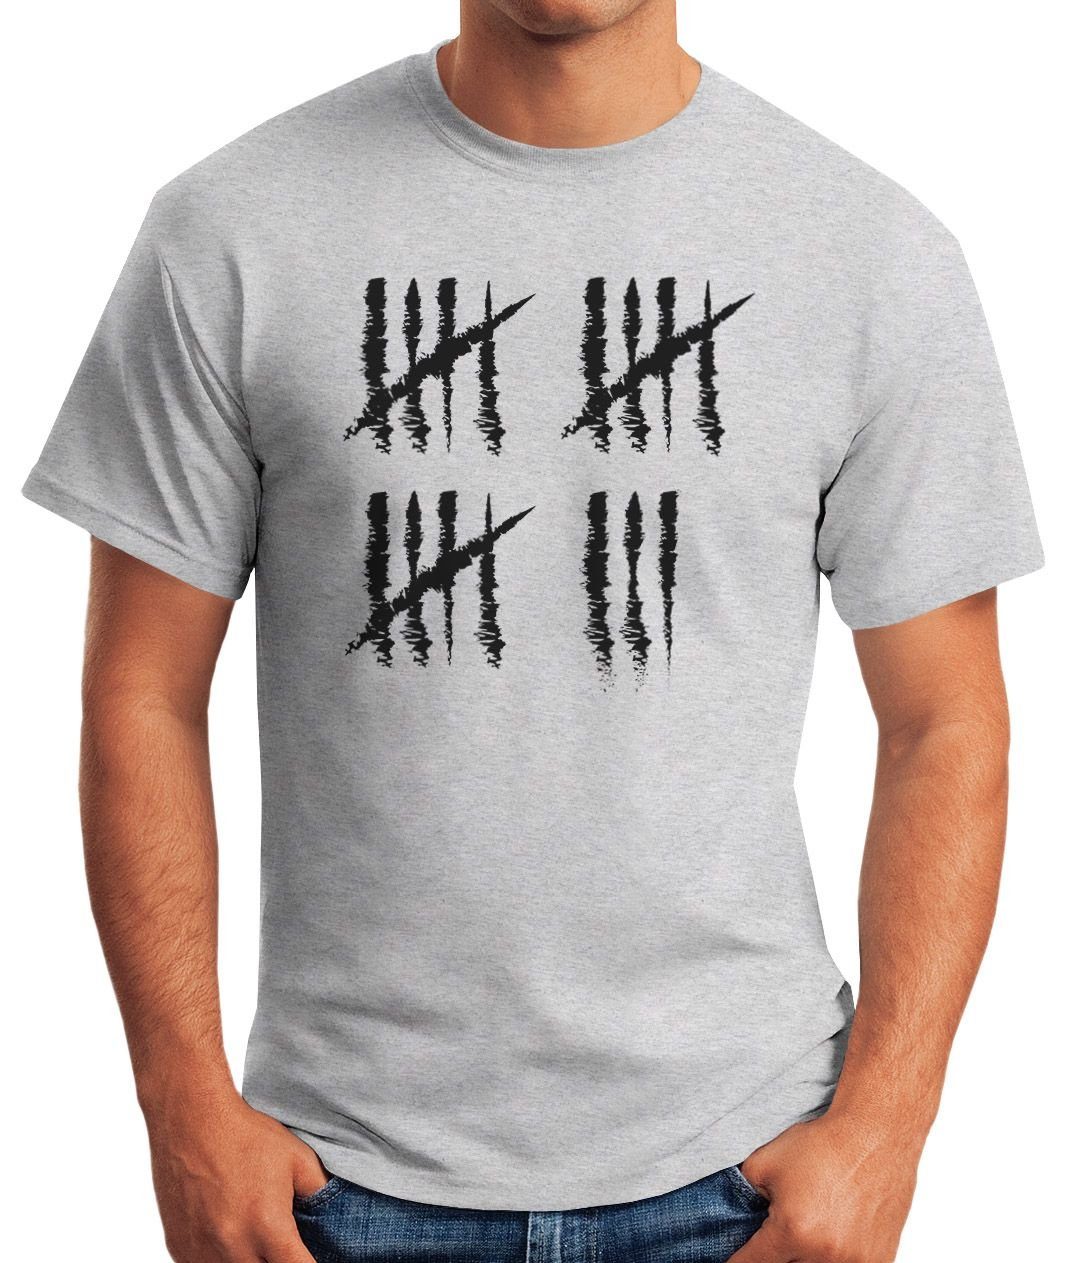 Alter [object Jubiläum T-Shirt Herren mit Geburtstag grau Jahrgang Print-Shirt Strichliste Fun-Shirt Moonworks® 18 MoonWorks Print Striche Object] Geschenk